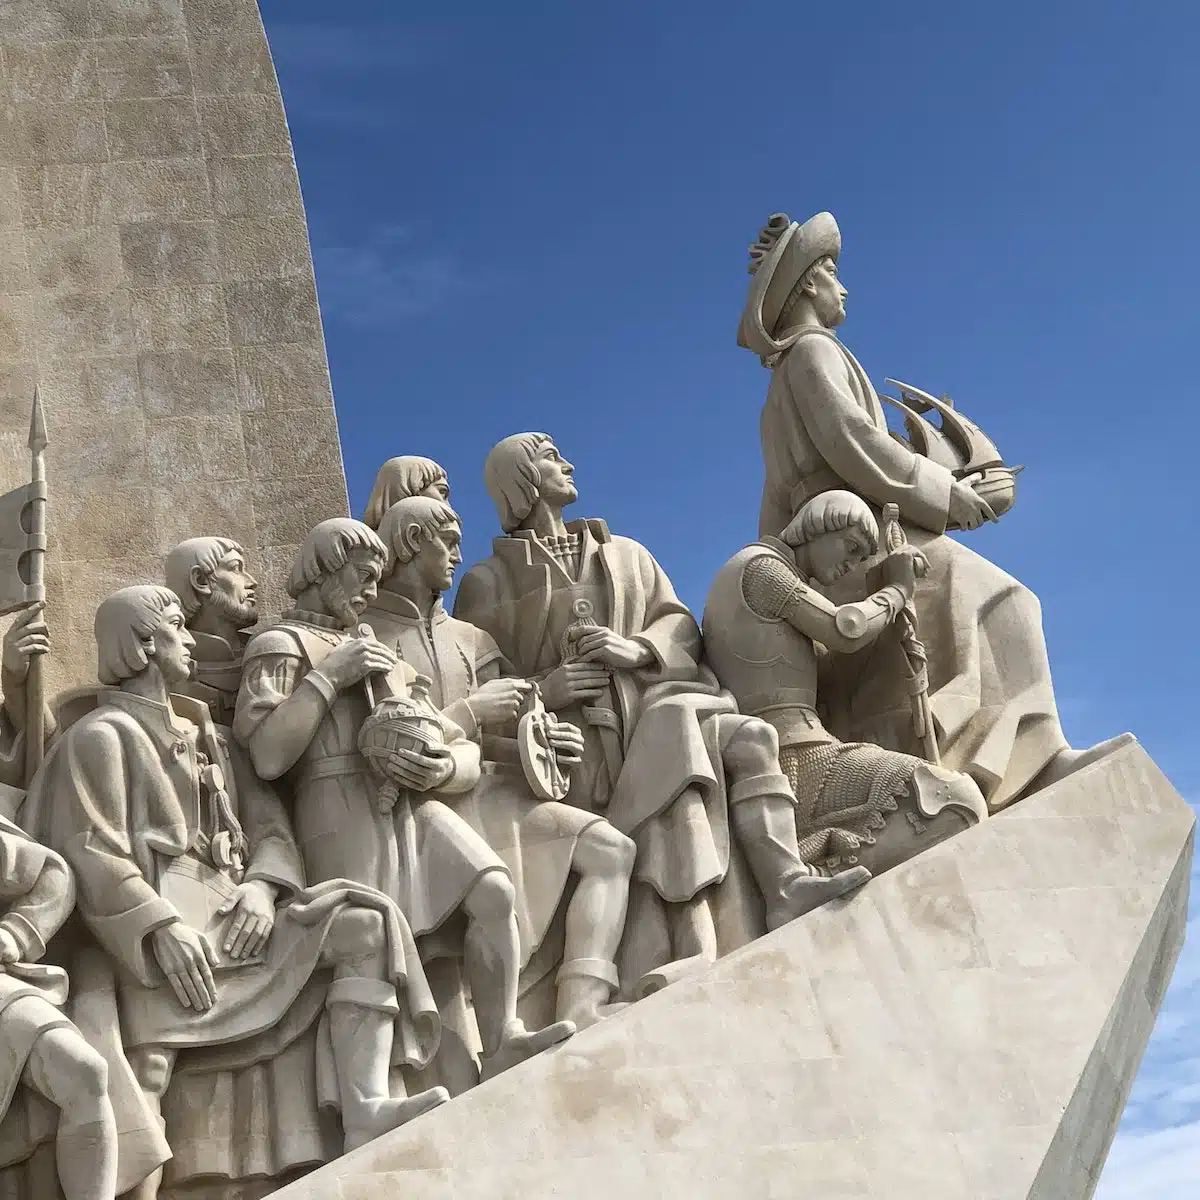 Padrao dos Descobrimentos, Monument des Découvertes, Lisbonne, Portugal